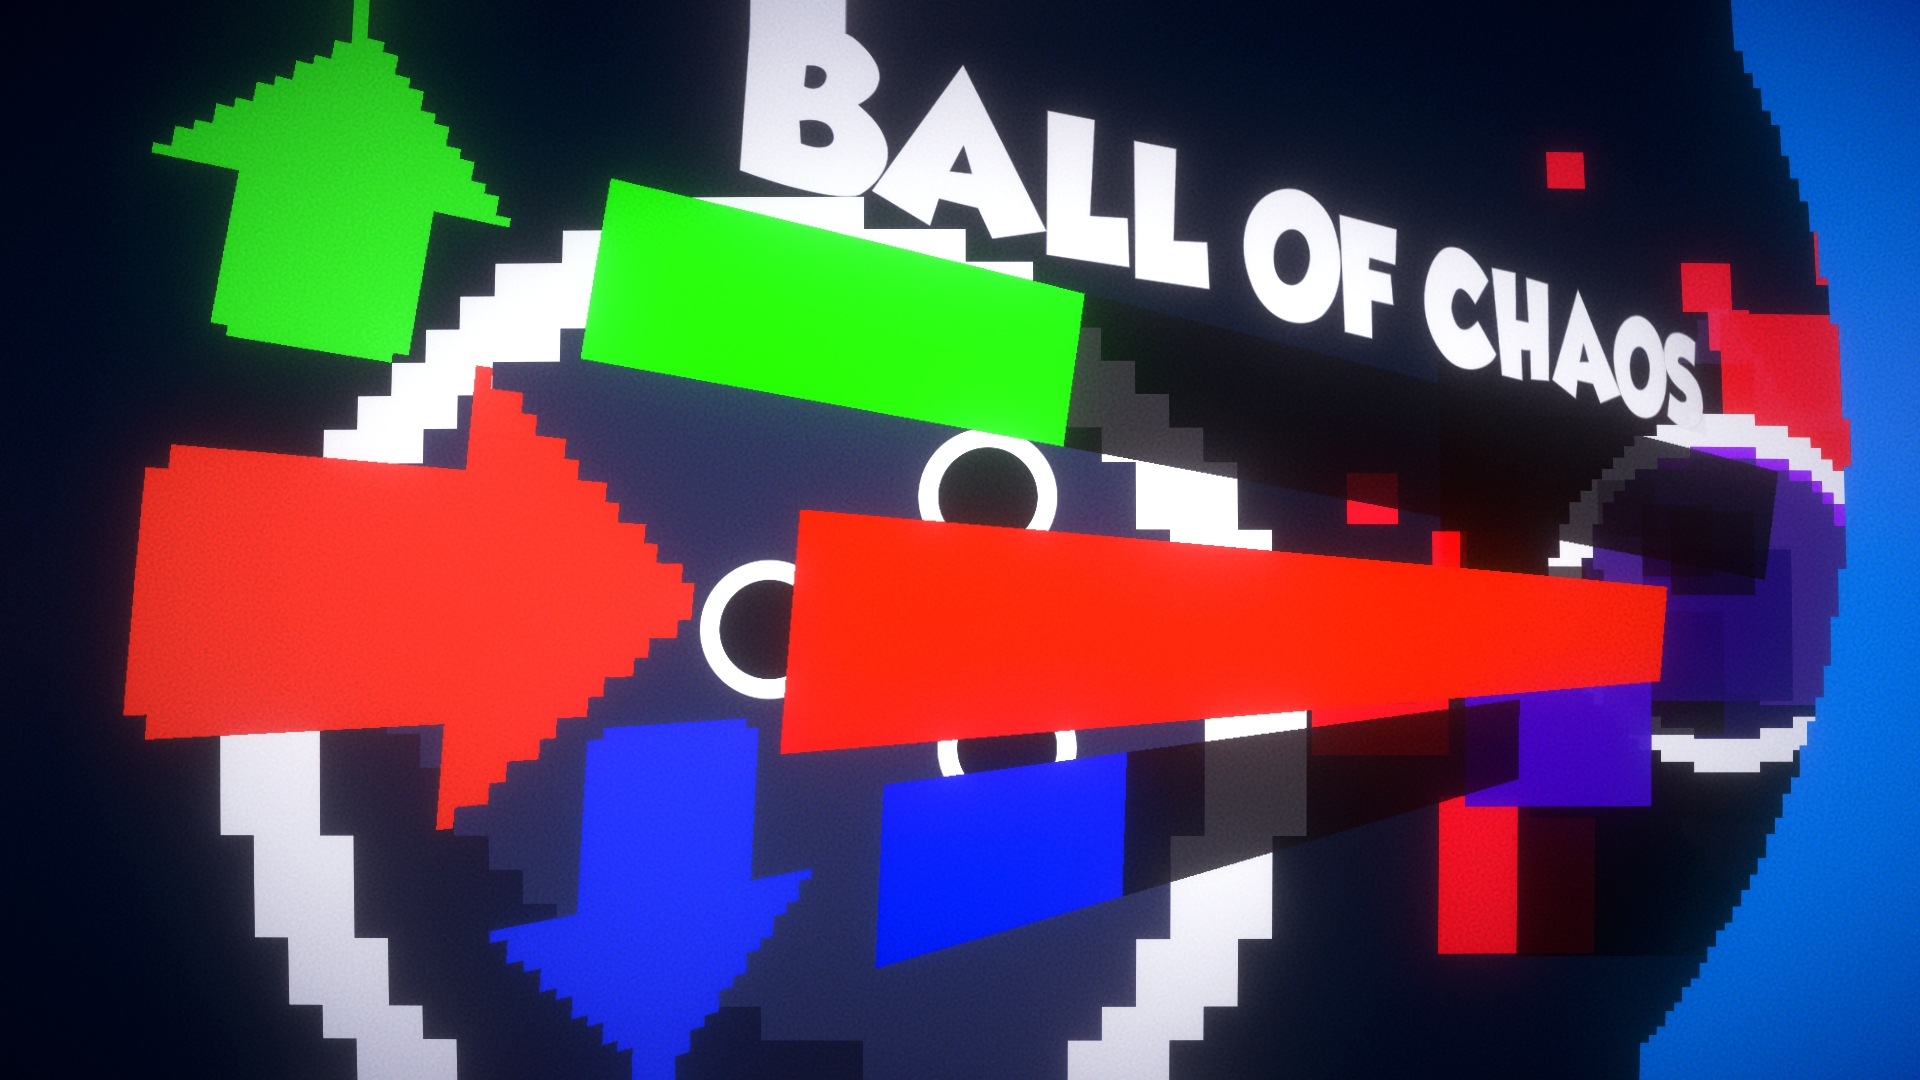 Ball of Chaos